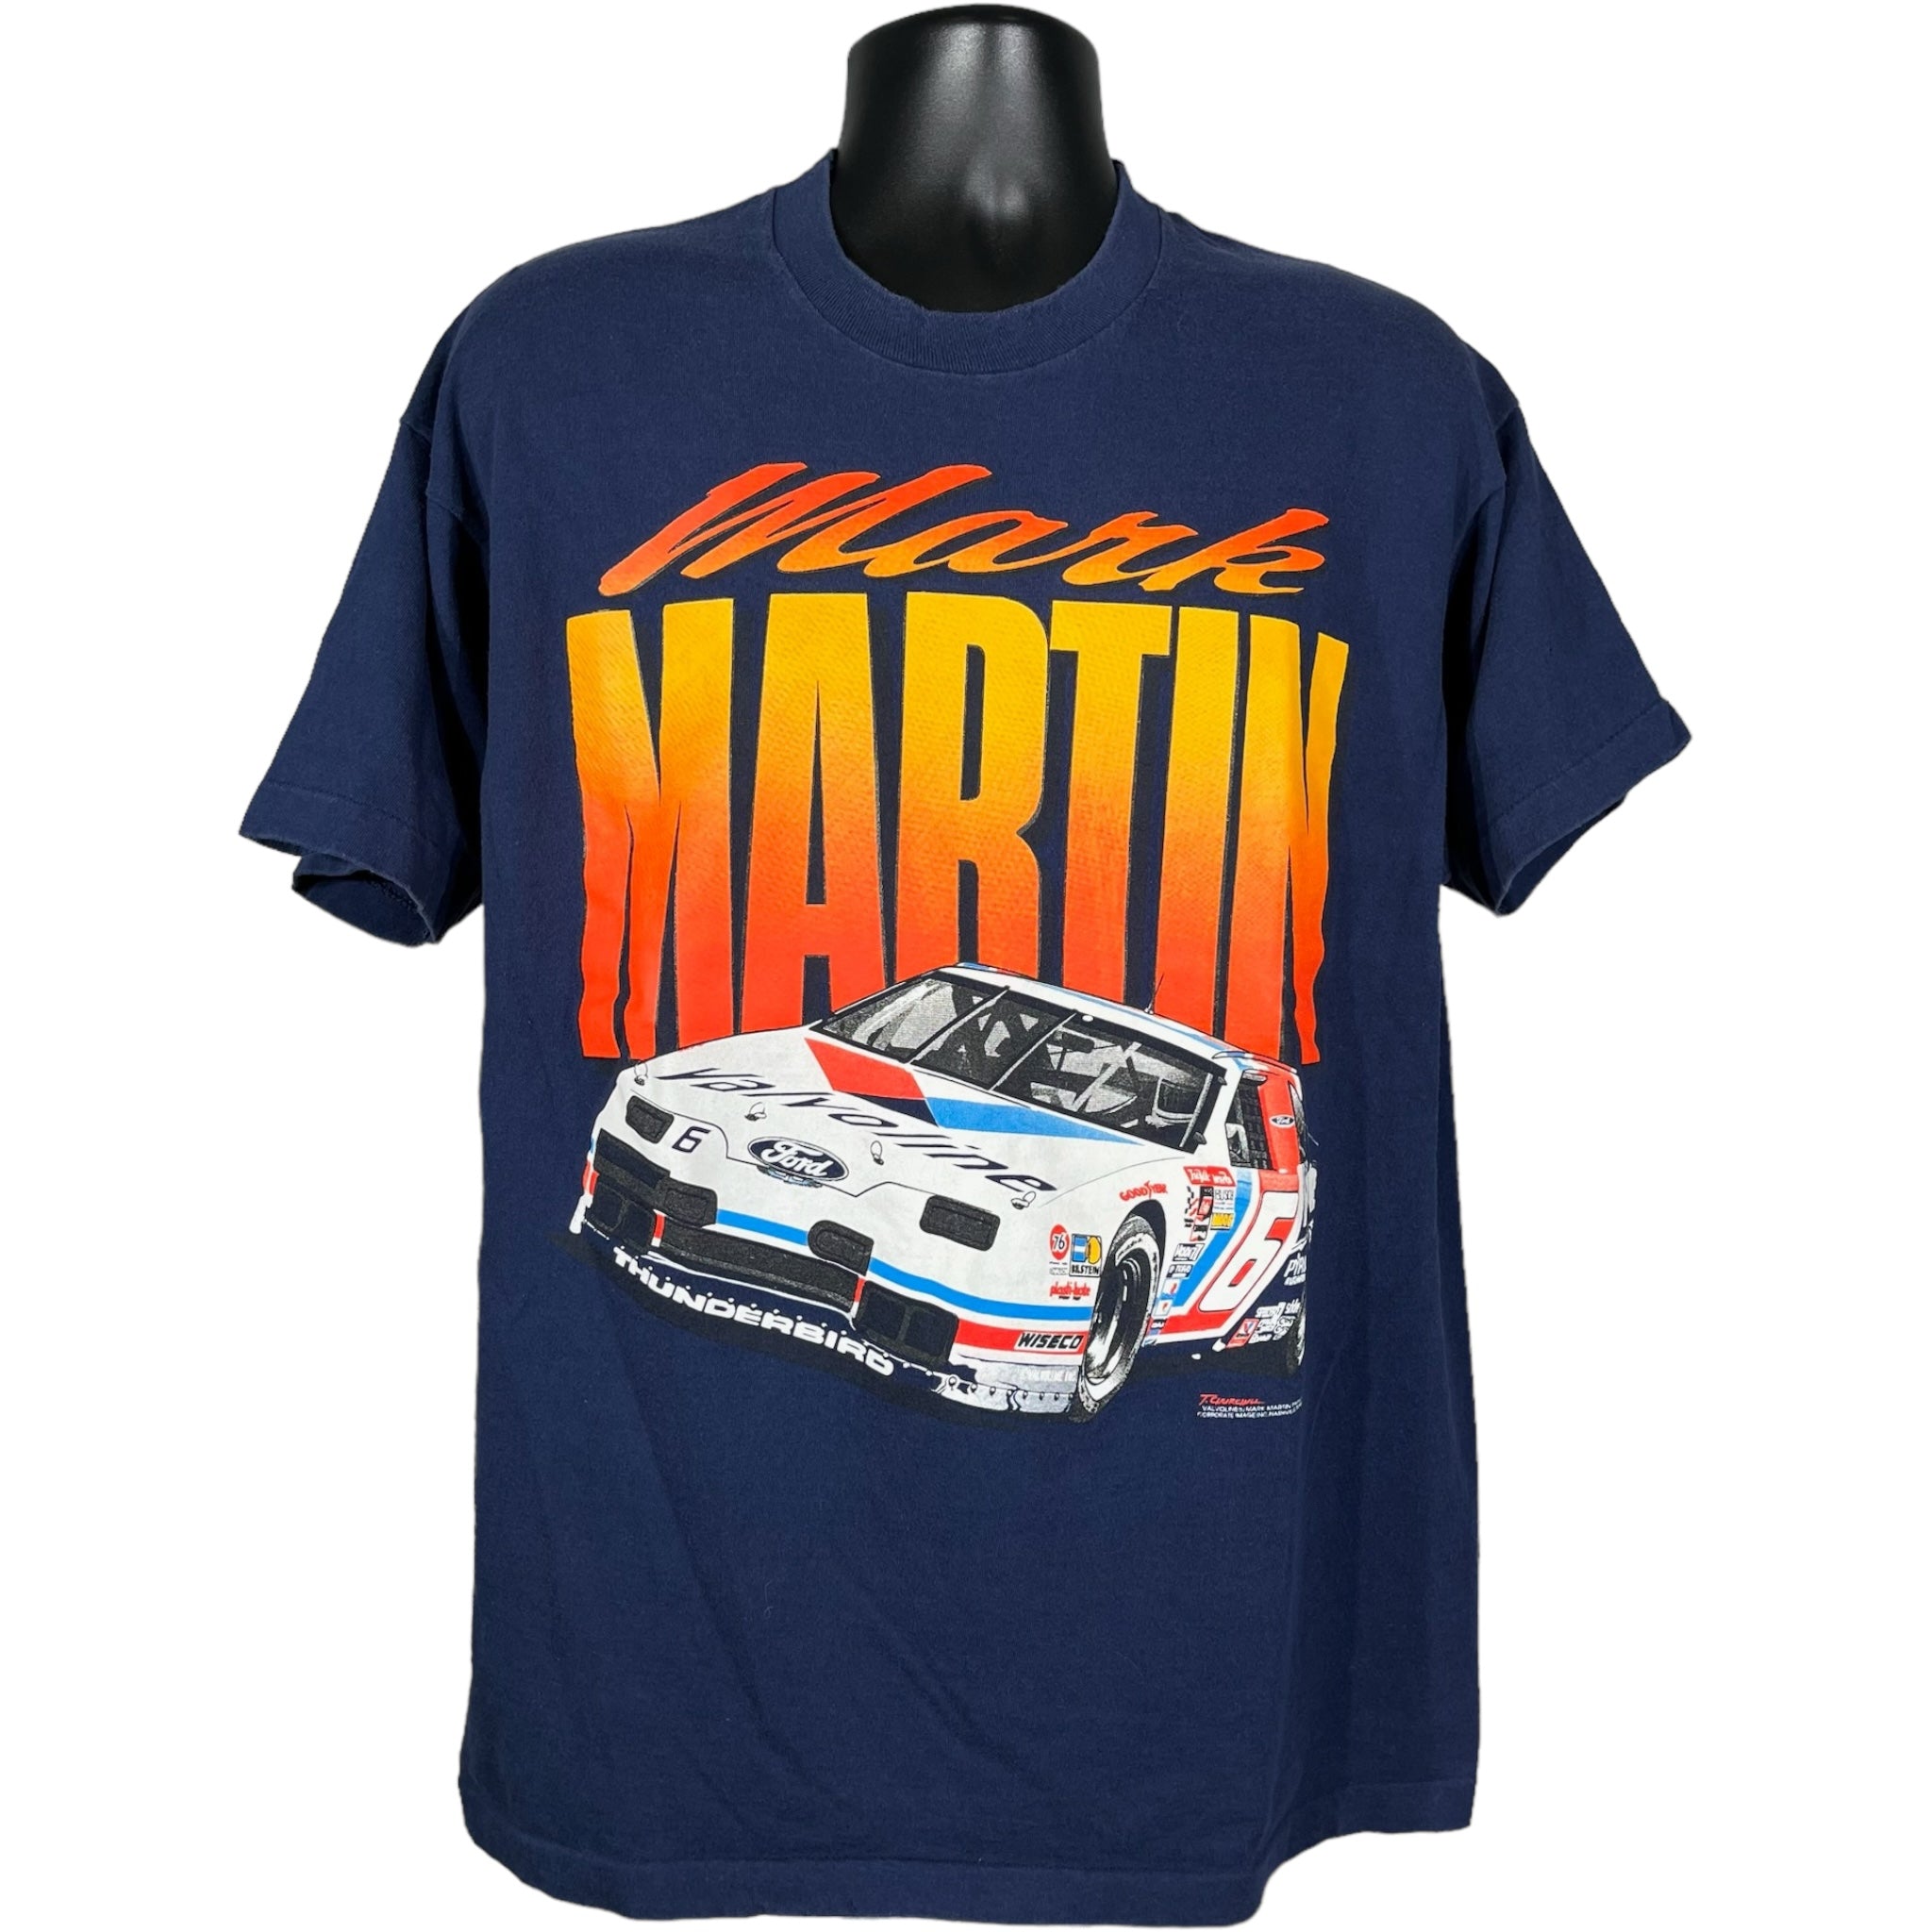 Vintage Mark Martin Racing Tee